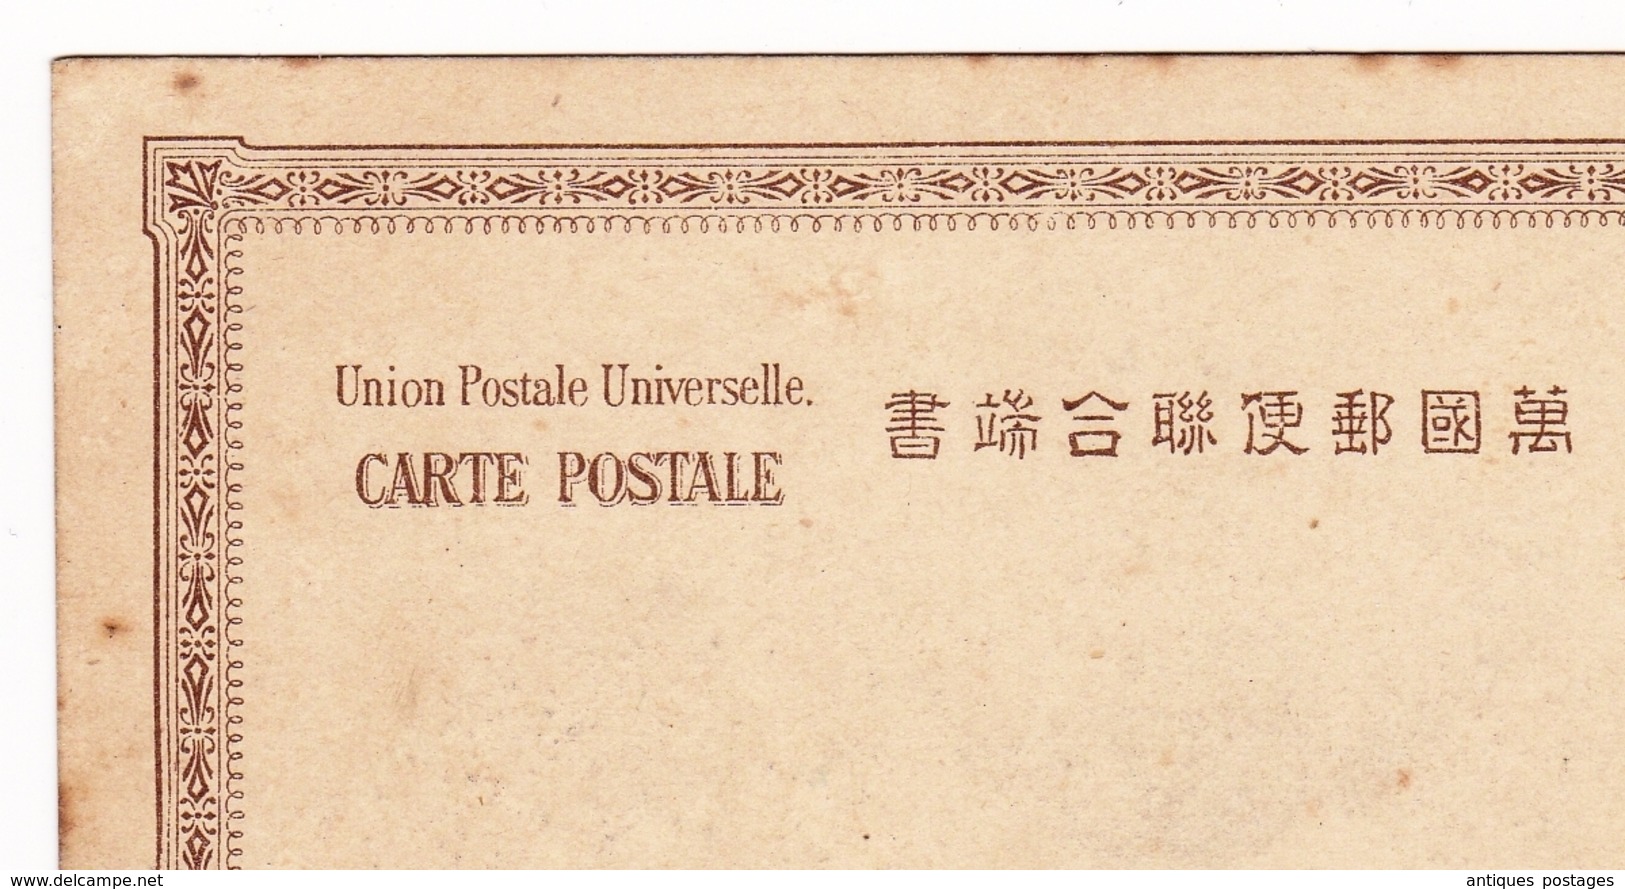 Carte Postale Osaka 1903 大阪市 Japon Japan Education Building OSAKA EXHIBITION 1903 はがき - Osaka